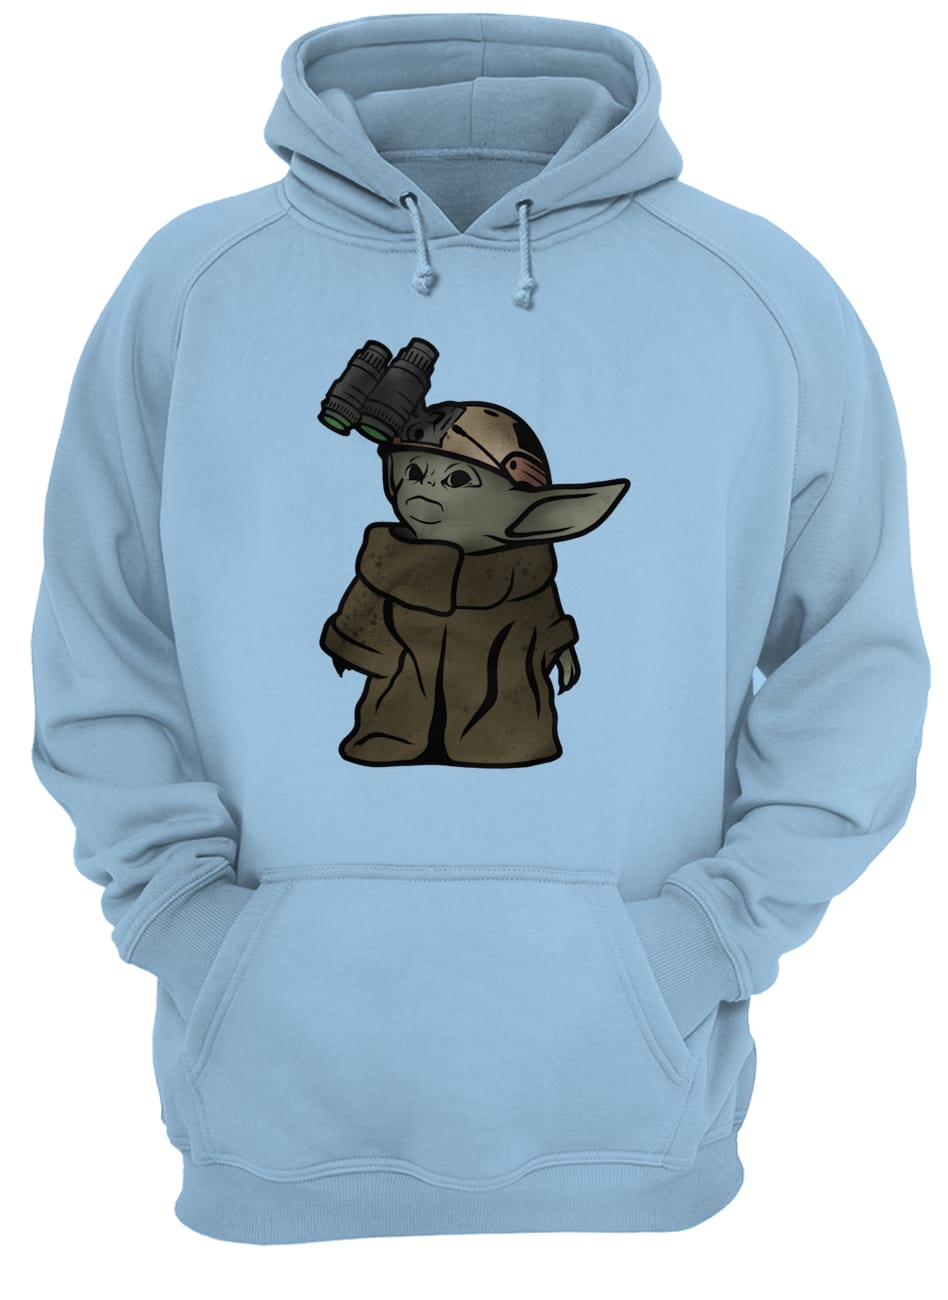 Lil homie baby yoda hoodie